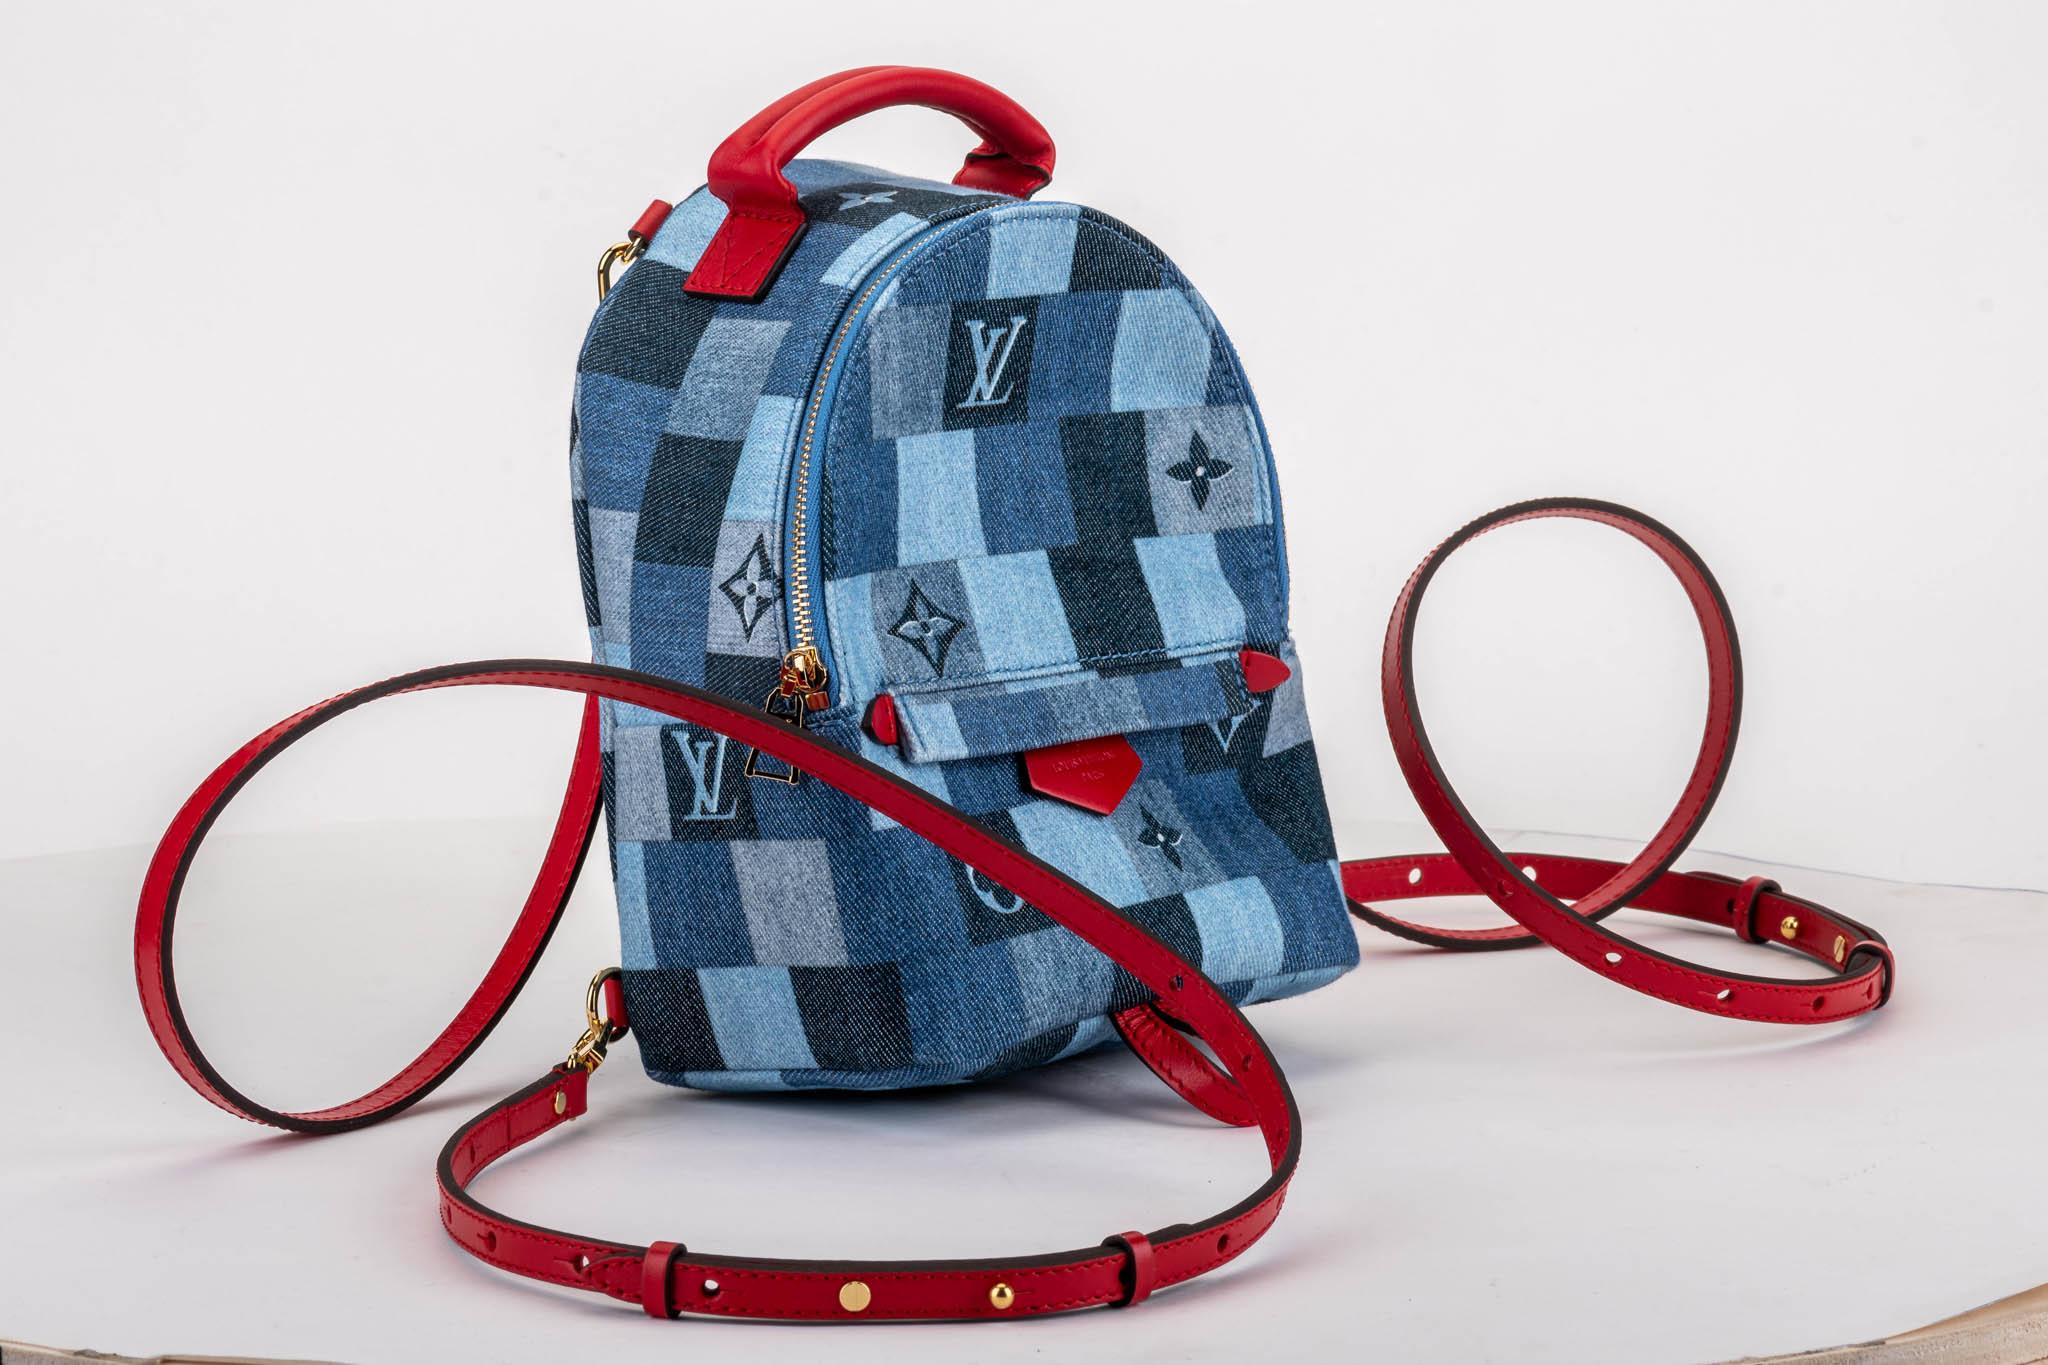 Louis Vuitton brandneuer Denim-Mini-Rucksack in limitierter Auflage. Kontrastfarbige Lederriemen. Außentasche mit Reißverschluss, offene Innentasche. Kommt mit Seriennummer, Schutzhülle und Box.